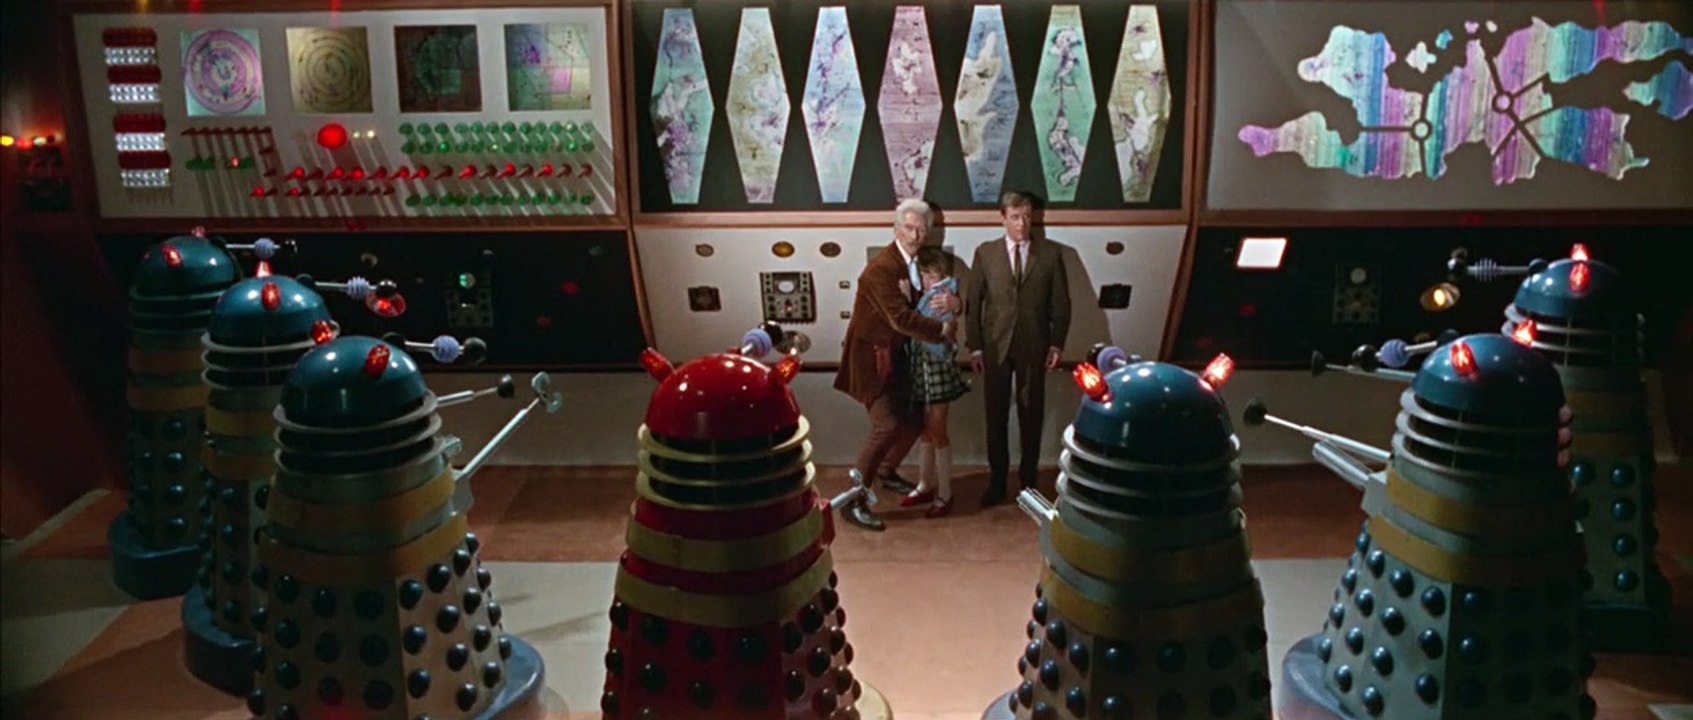 Dr. Who: Die Invasion der Daleks auf der Erde 2150 n. Chr. | movie | 1966 | Official Trailer